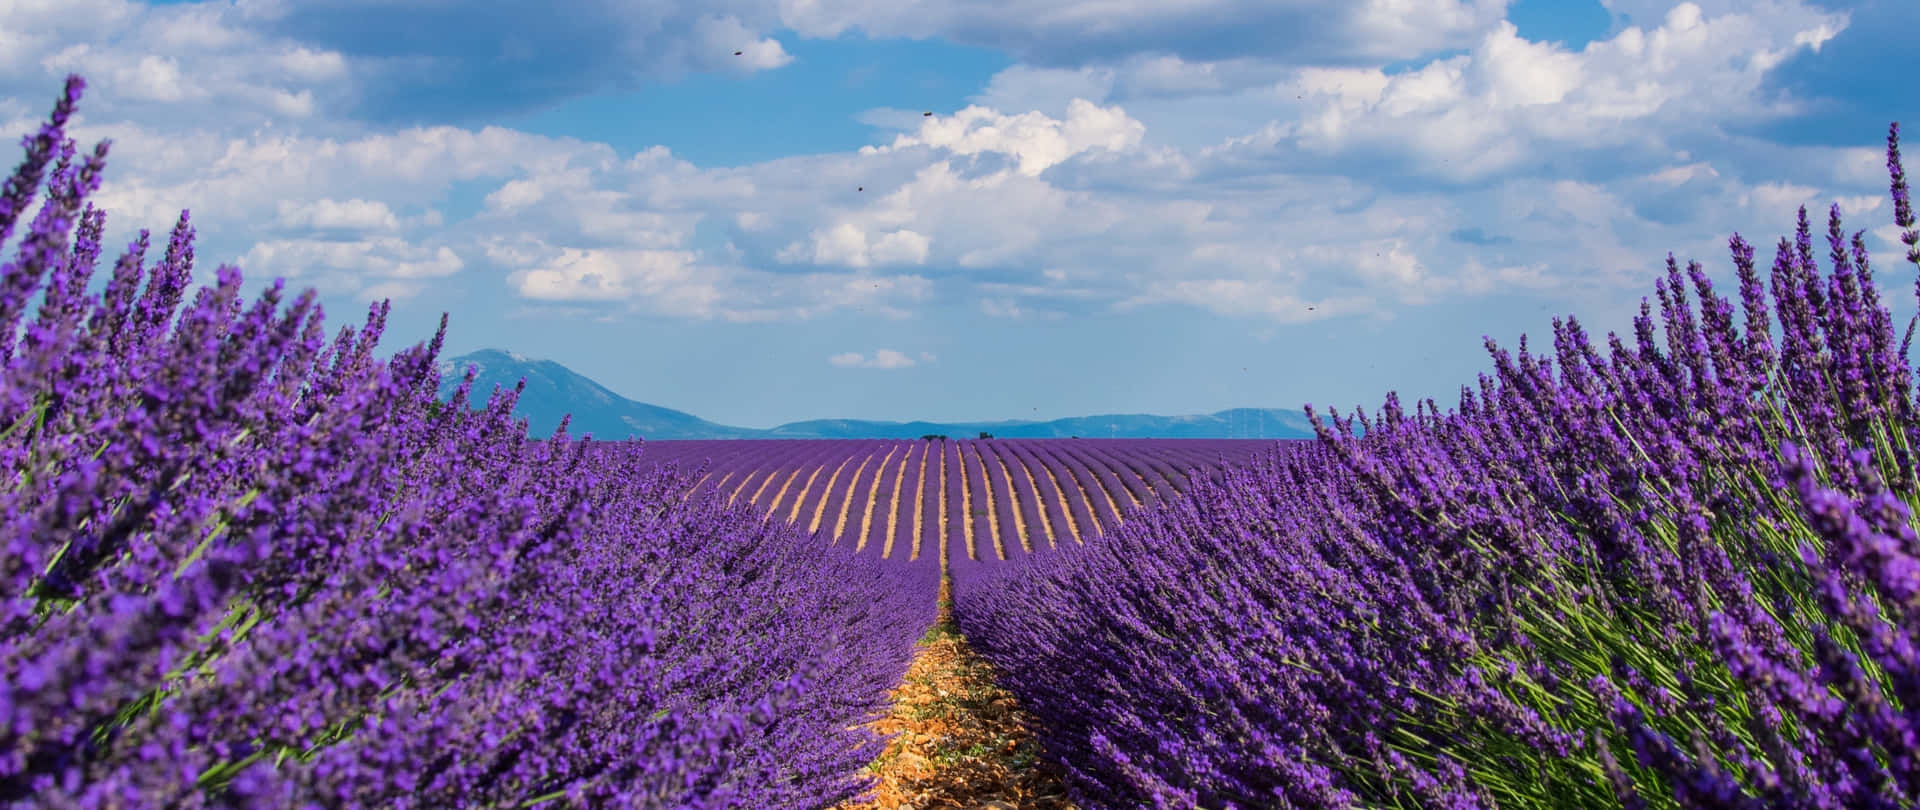 Breathtaking View of Lavender Fields Wallpaper